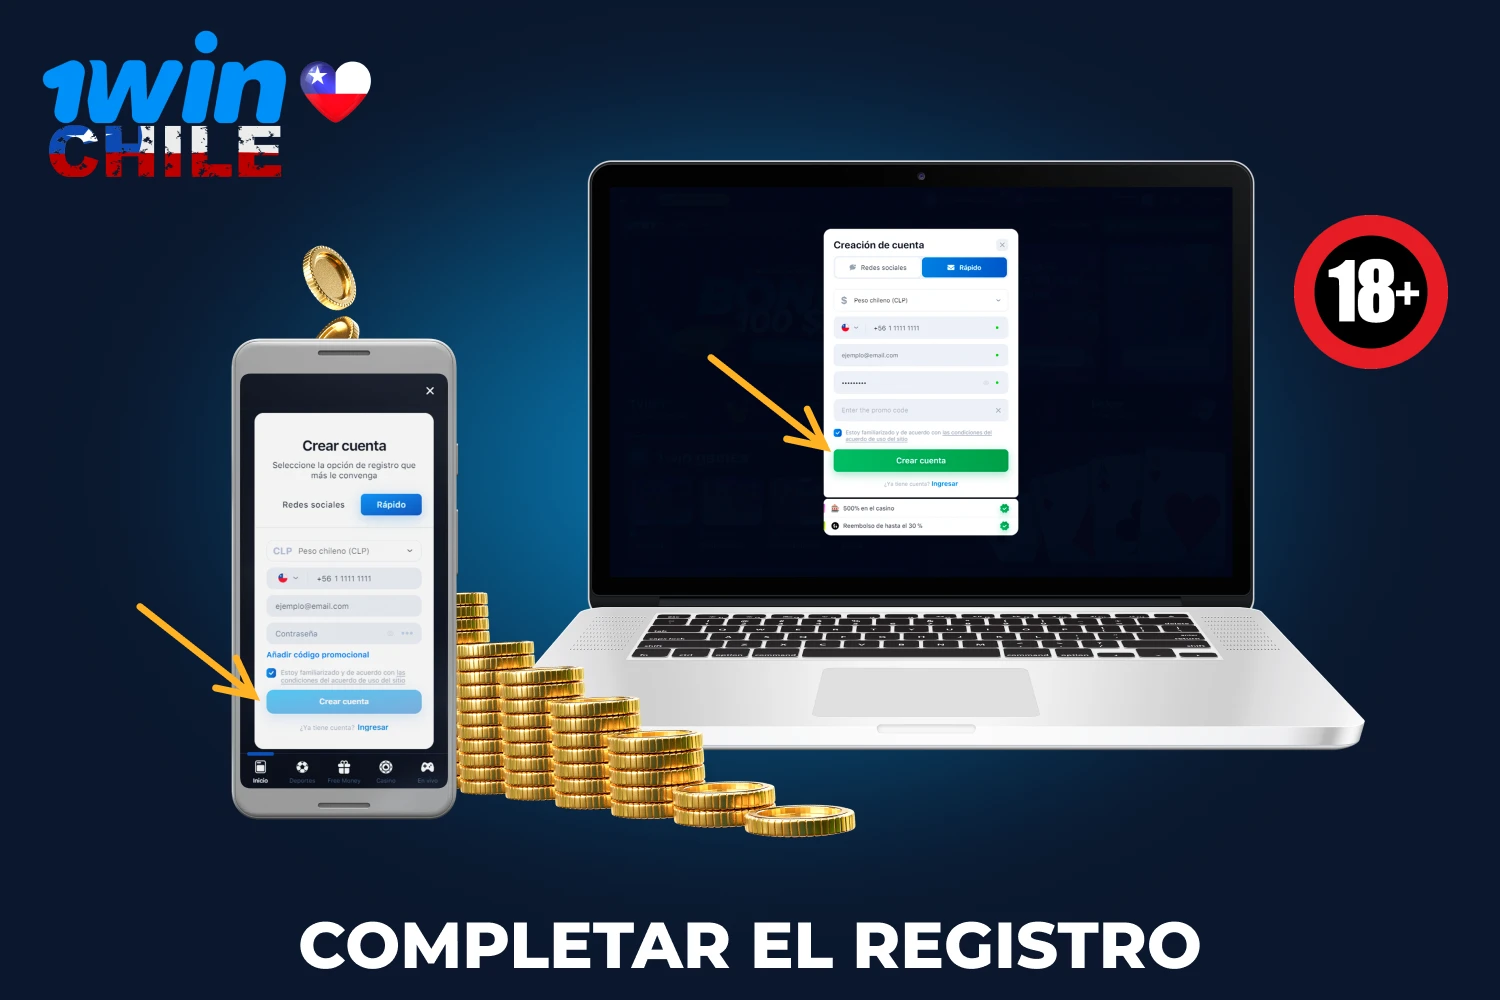 Al completar el registro, los jugadores de Chile tendrán acceso a las apuestas deportivas y a todas las funciones del casino 1win